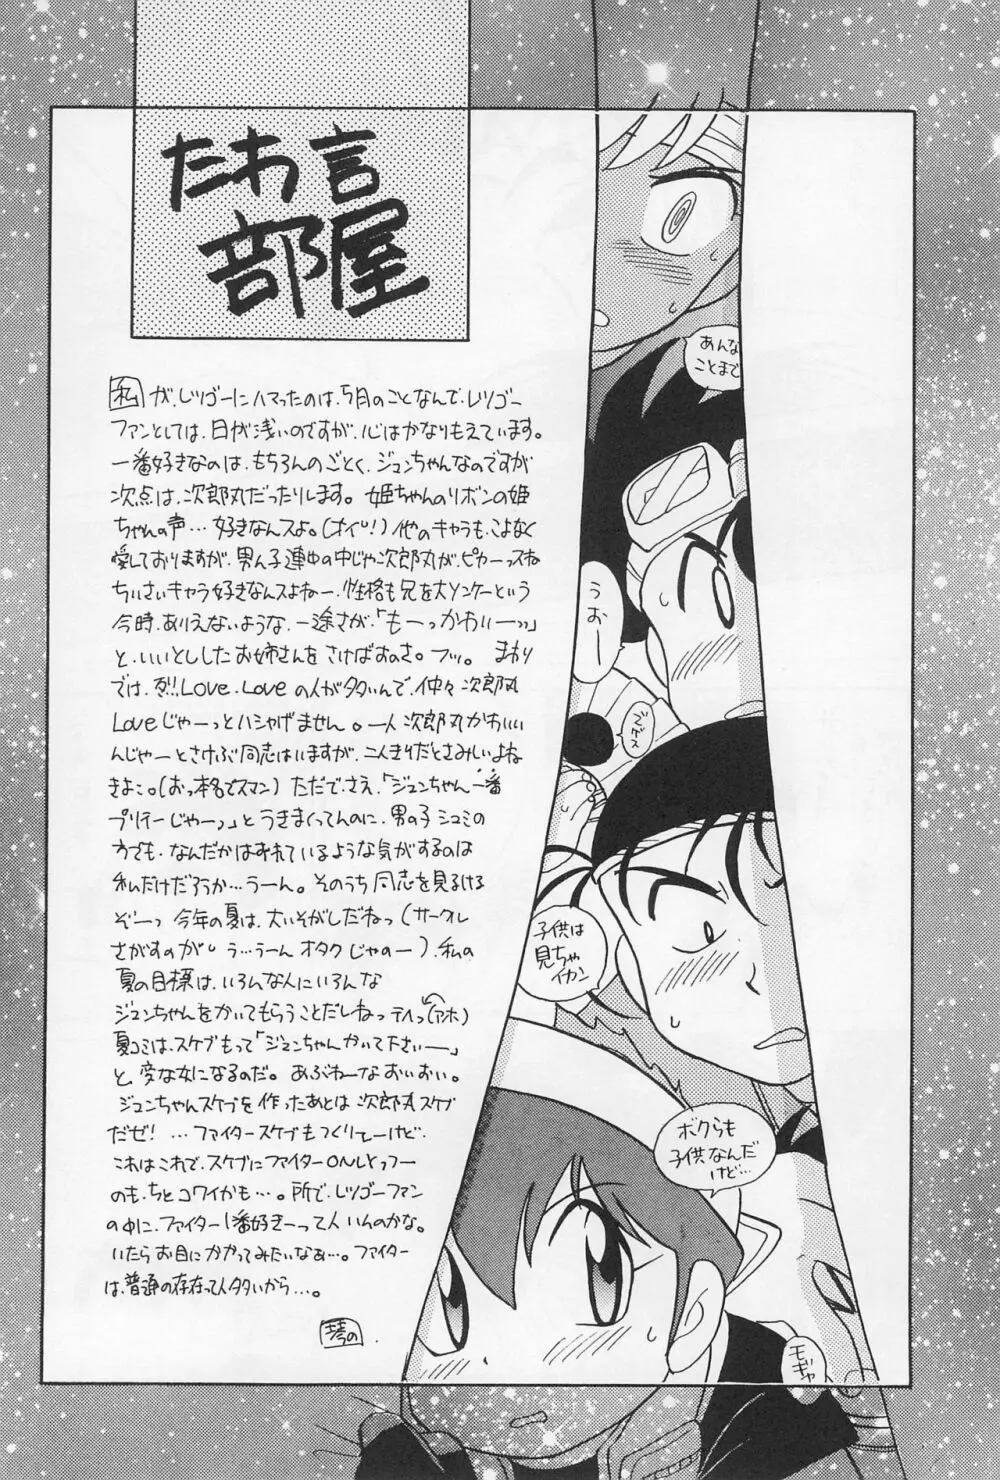 ミニ四ファイタージュンちゃん!! - page28